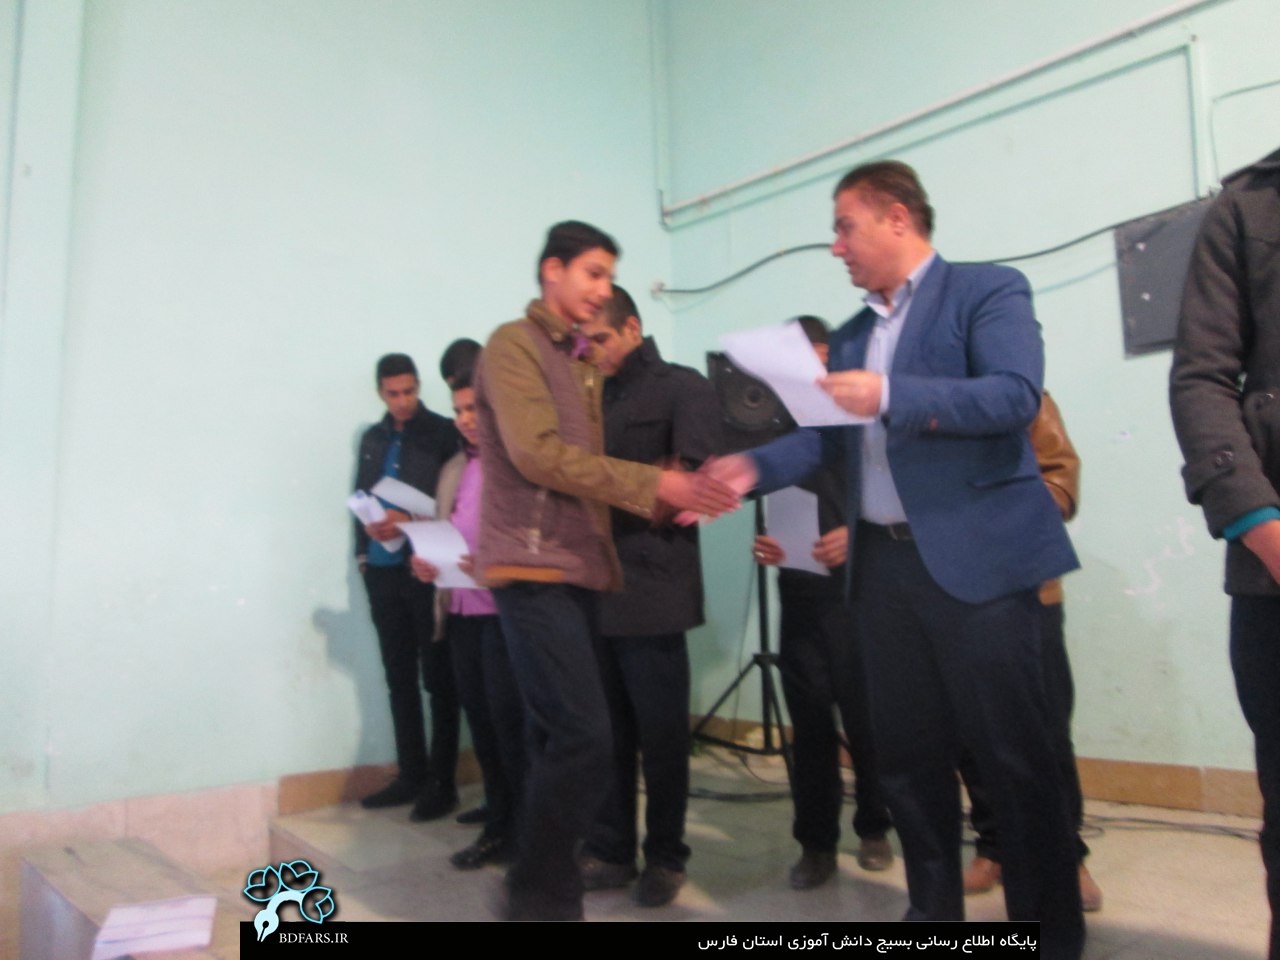 اعطای حکم مسئولیت شورای واحد به دانش آموزان دبیرستان امیر کبیر داراب